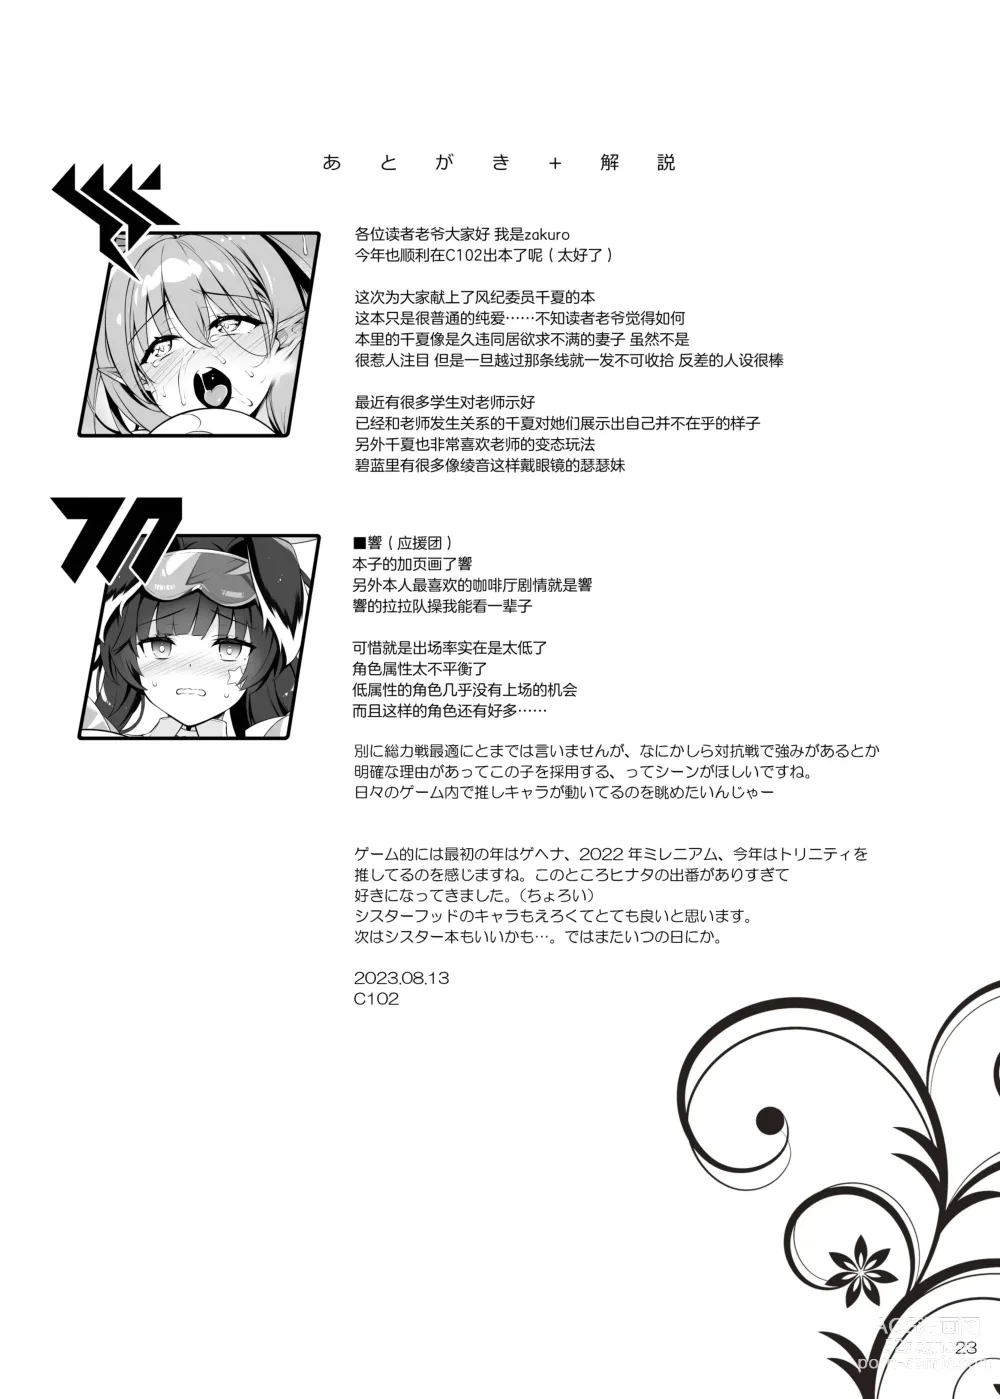 Page 22 of doujinshi Fuuki ga midarete imasu